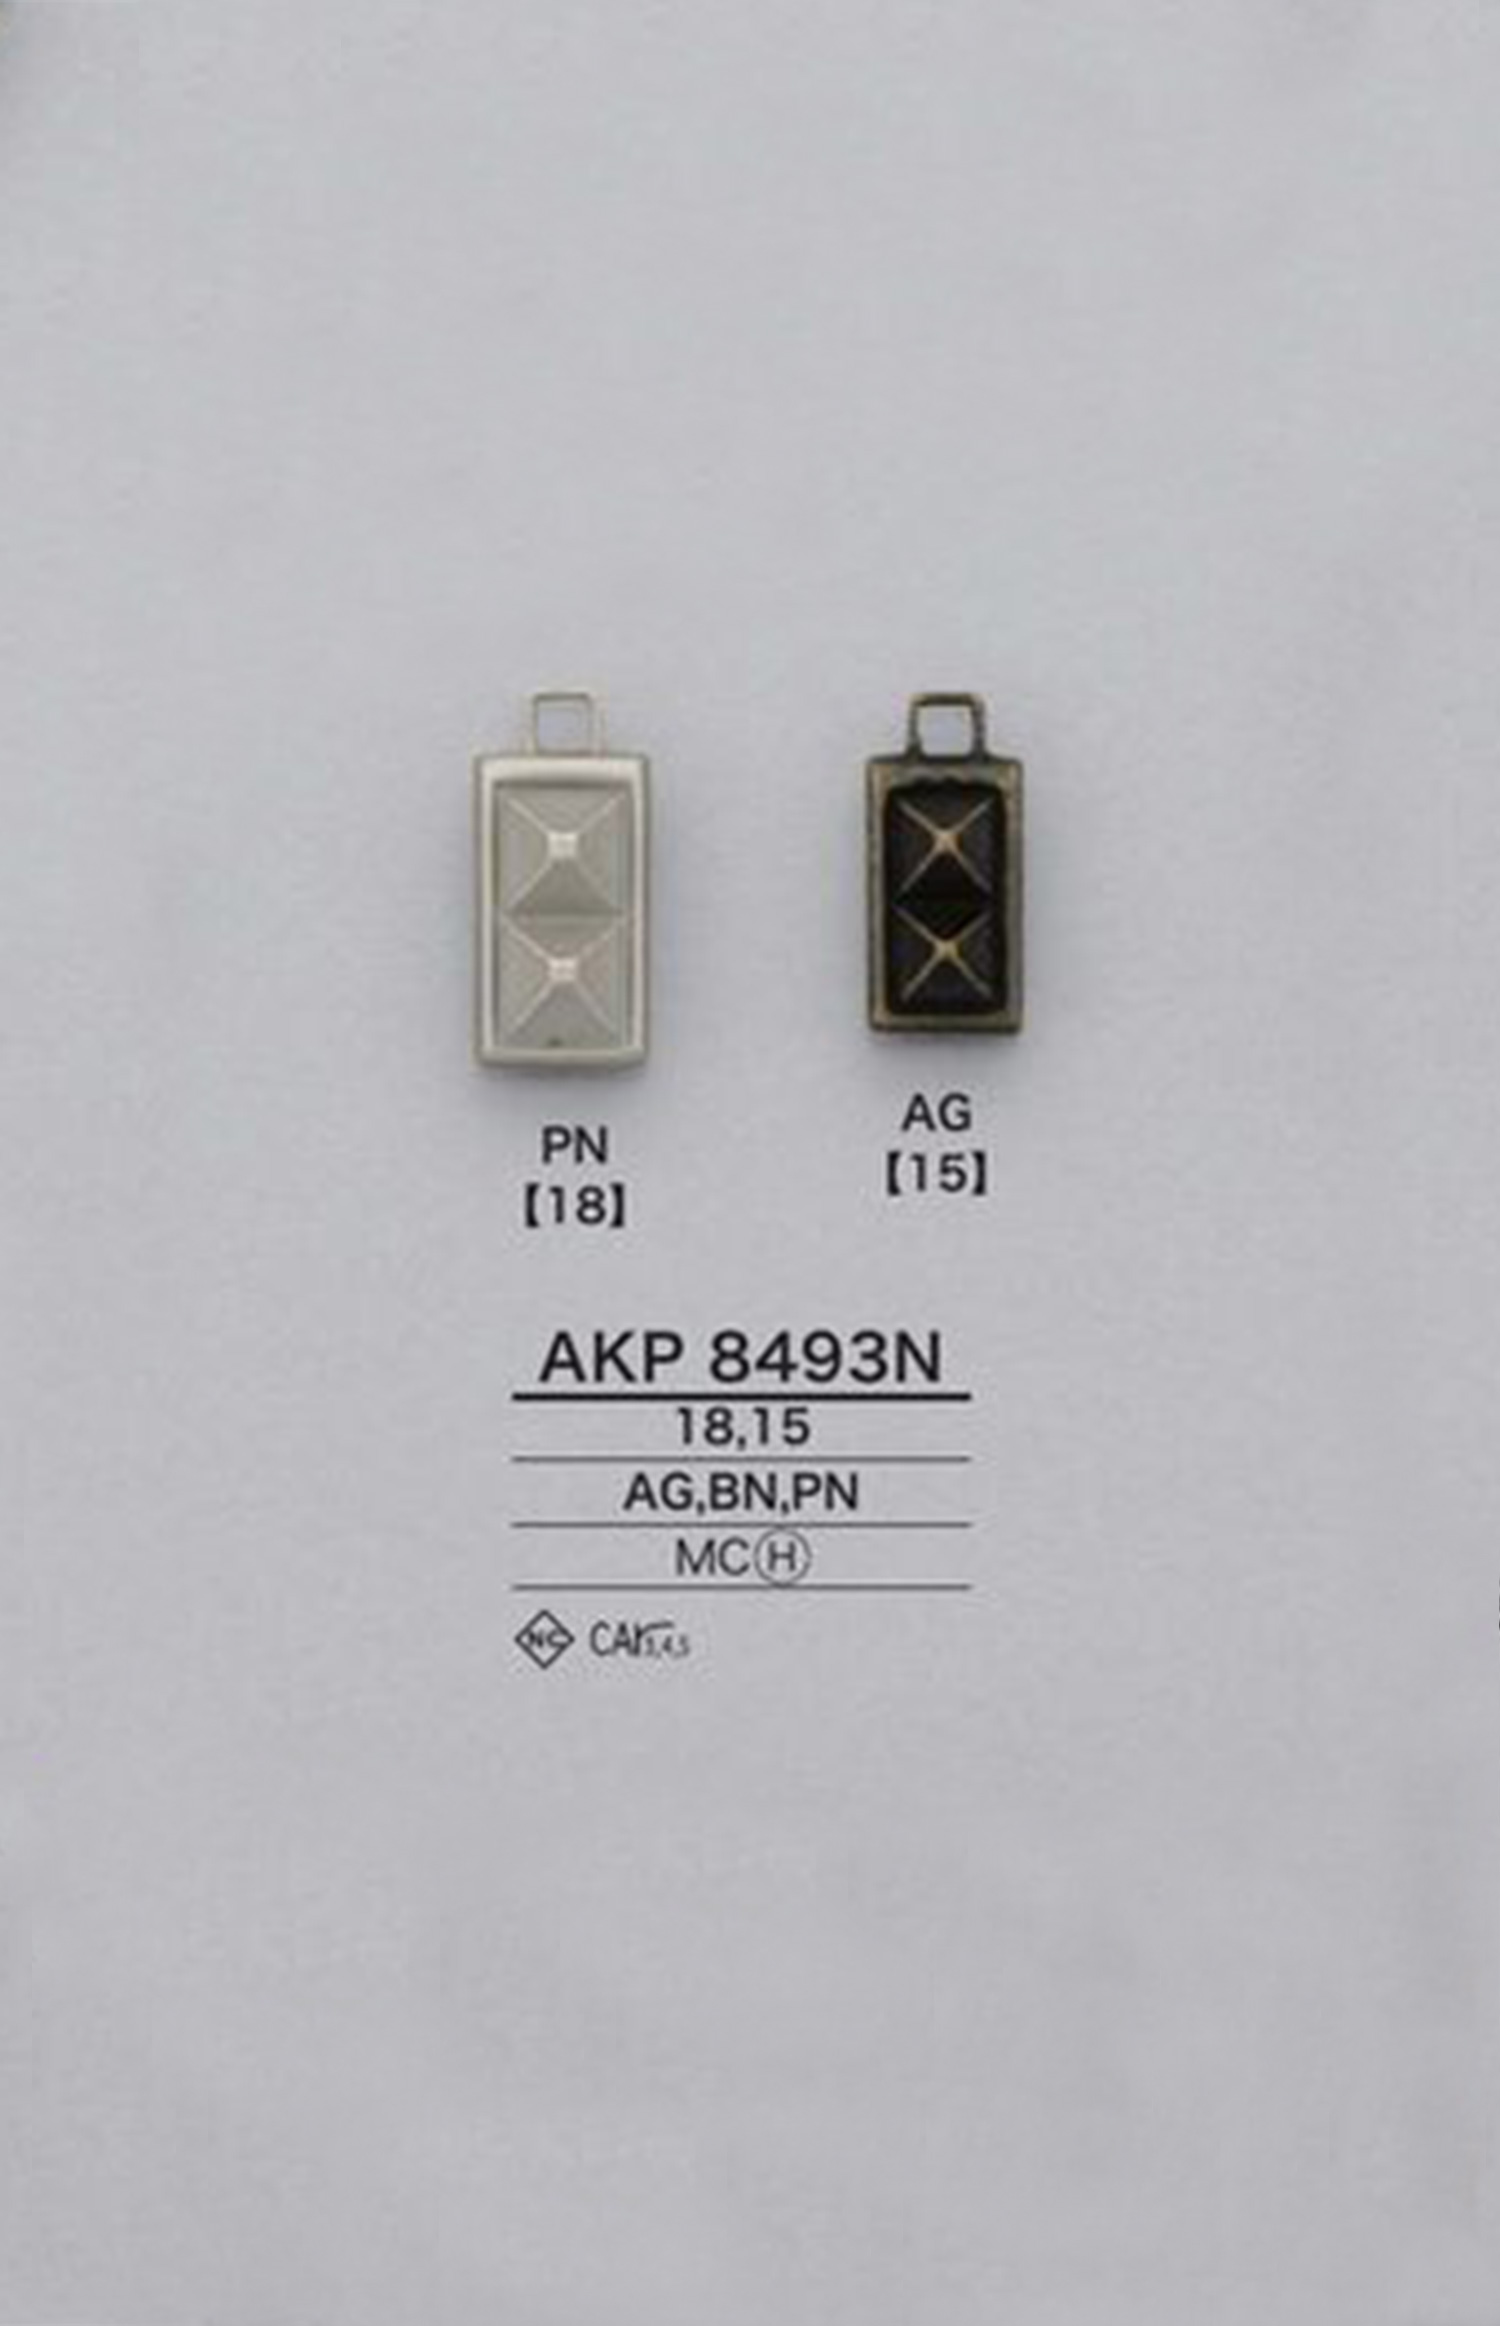 AKP8493N 스터드 지퍼 포인트(지퍼 슬라이더) IRIS